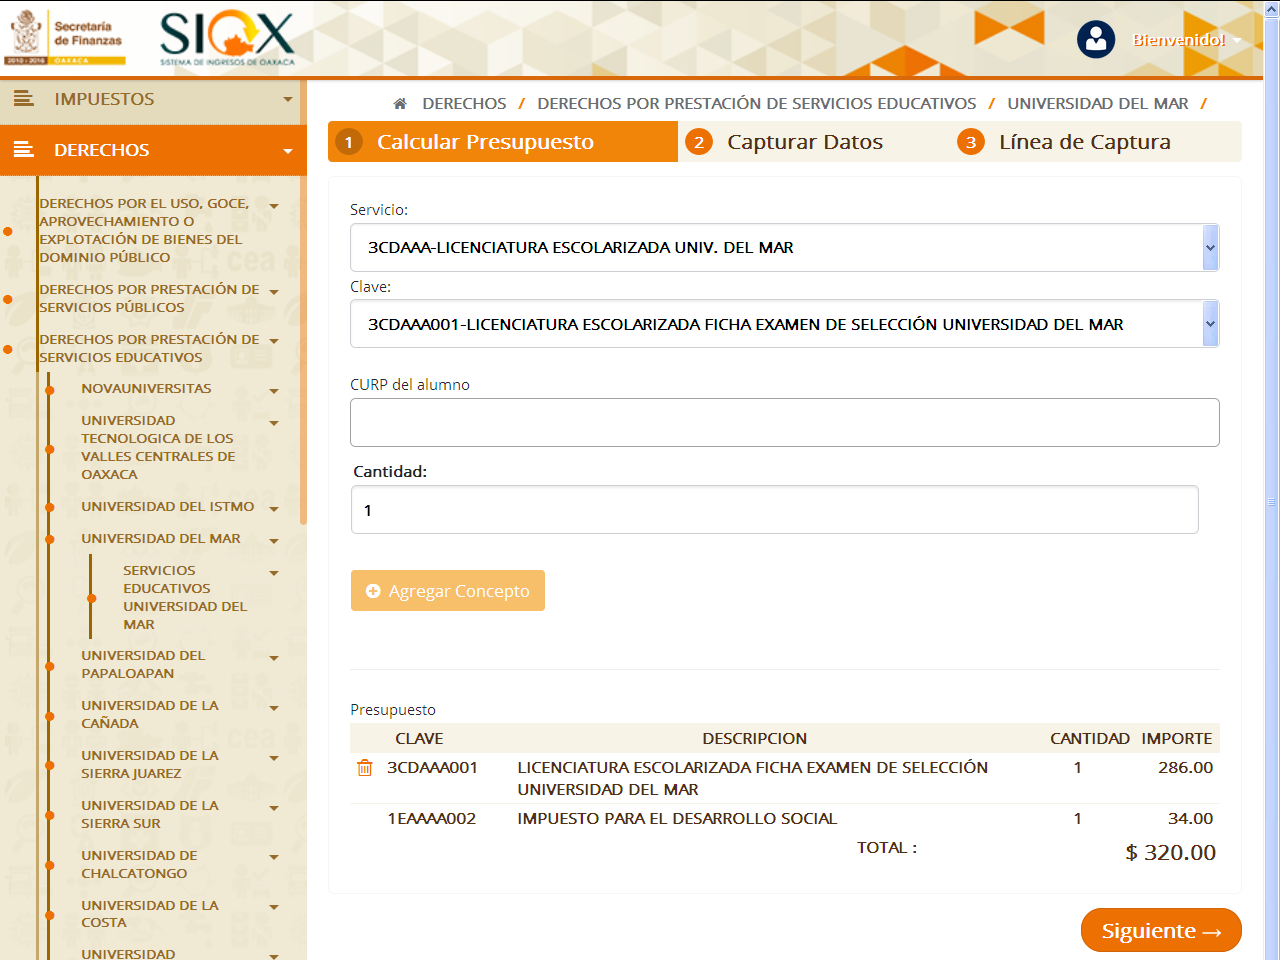 PAGO PARA DERECHO A EXAMEN DE SELECCIÓN. Accesar al link de la Secretaría de Finanzas de Oaxaca para generar formato de línea de captura https://siox.finanzasoaxaca.gob.